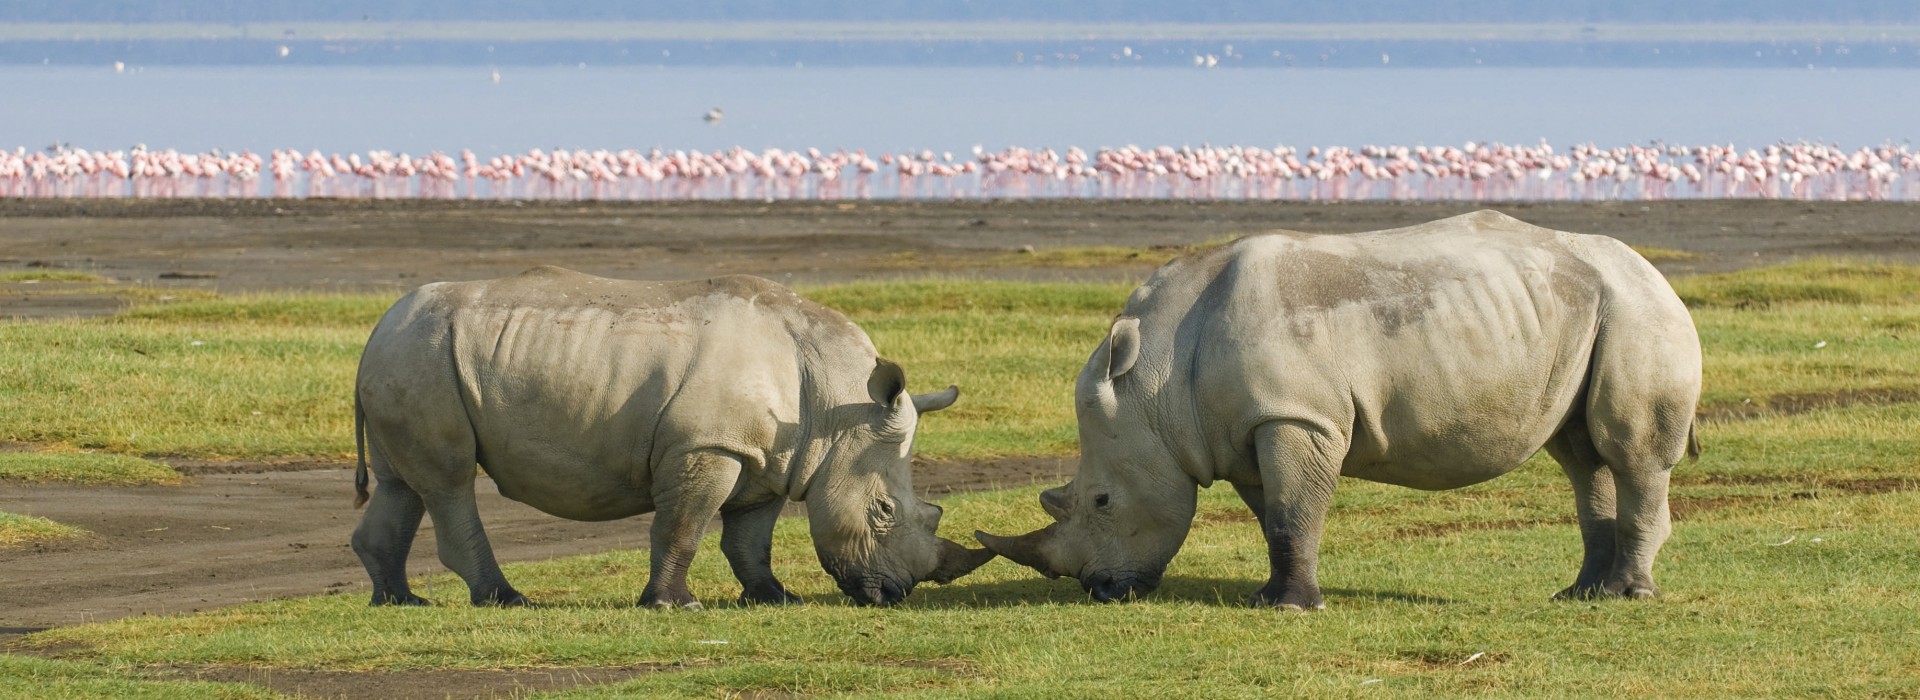 Rhinos at Lake Nakuru National Park